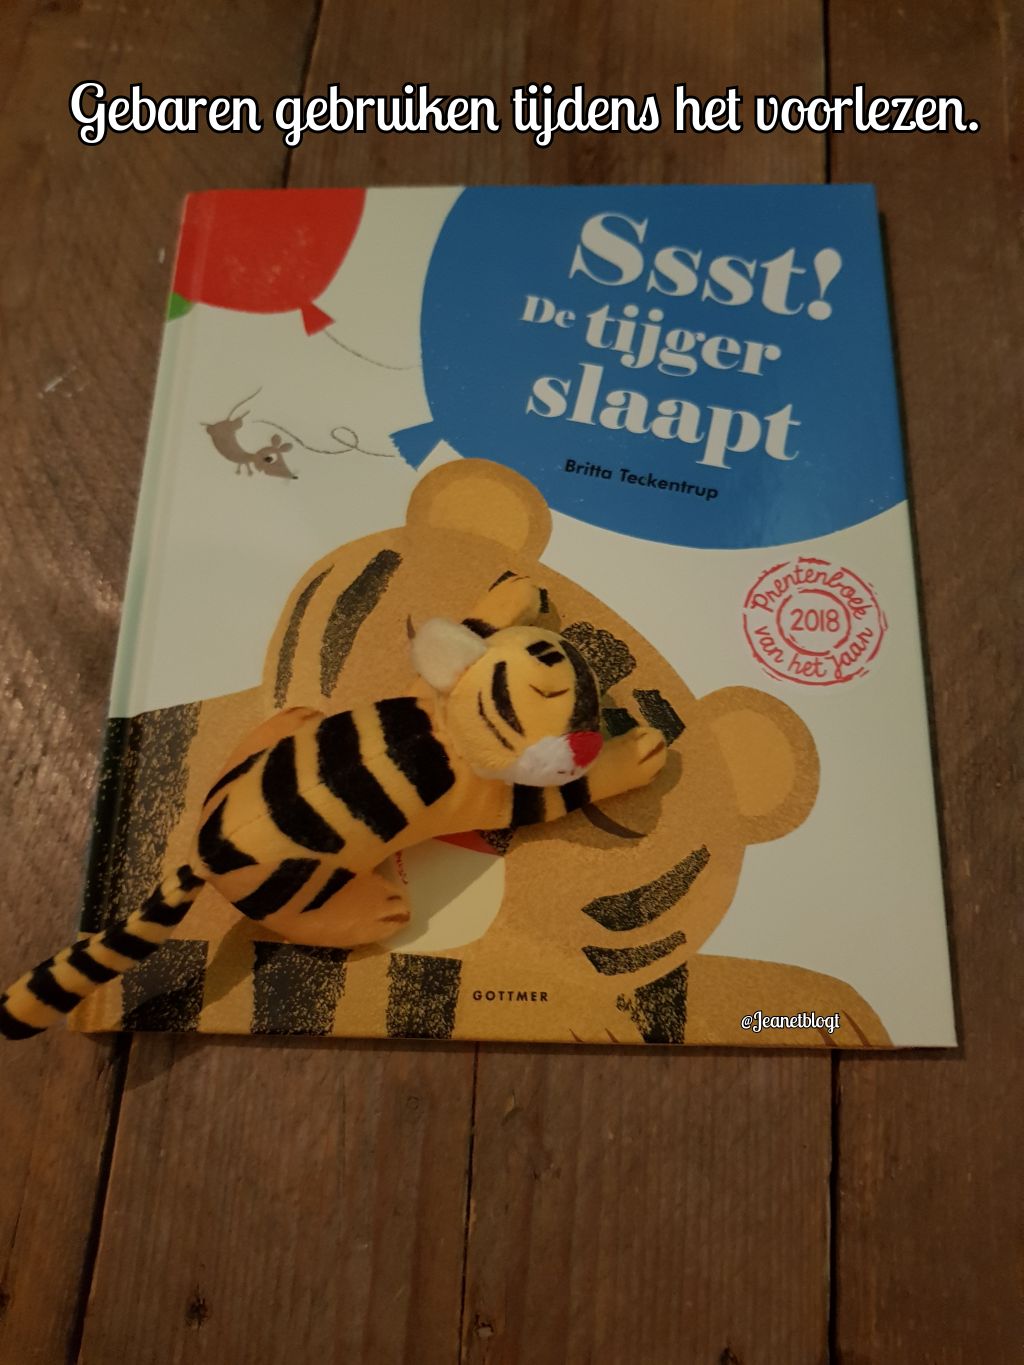 Gebaren gebruiken tijdens het voorlezen van het boek: Ssst! De tijger slaapt.